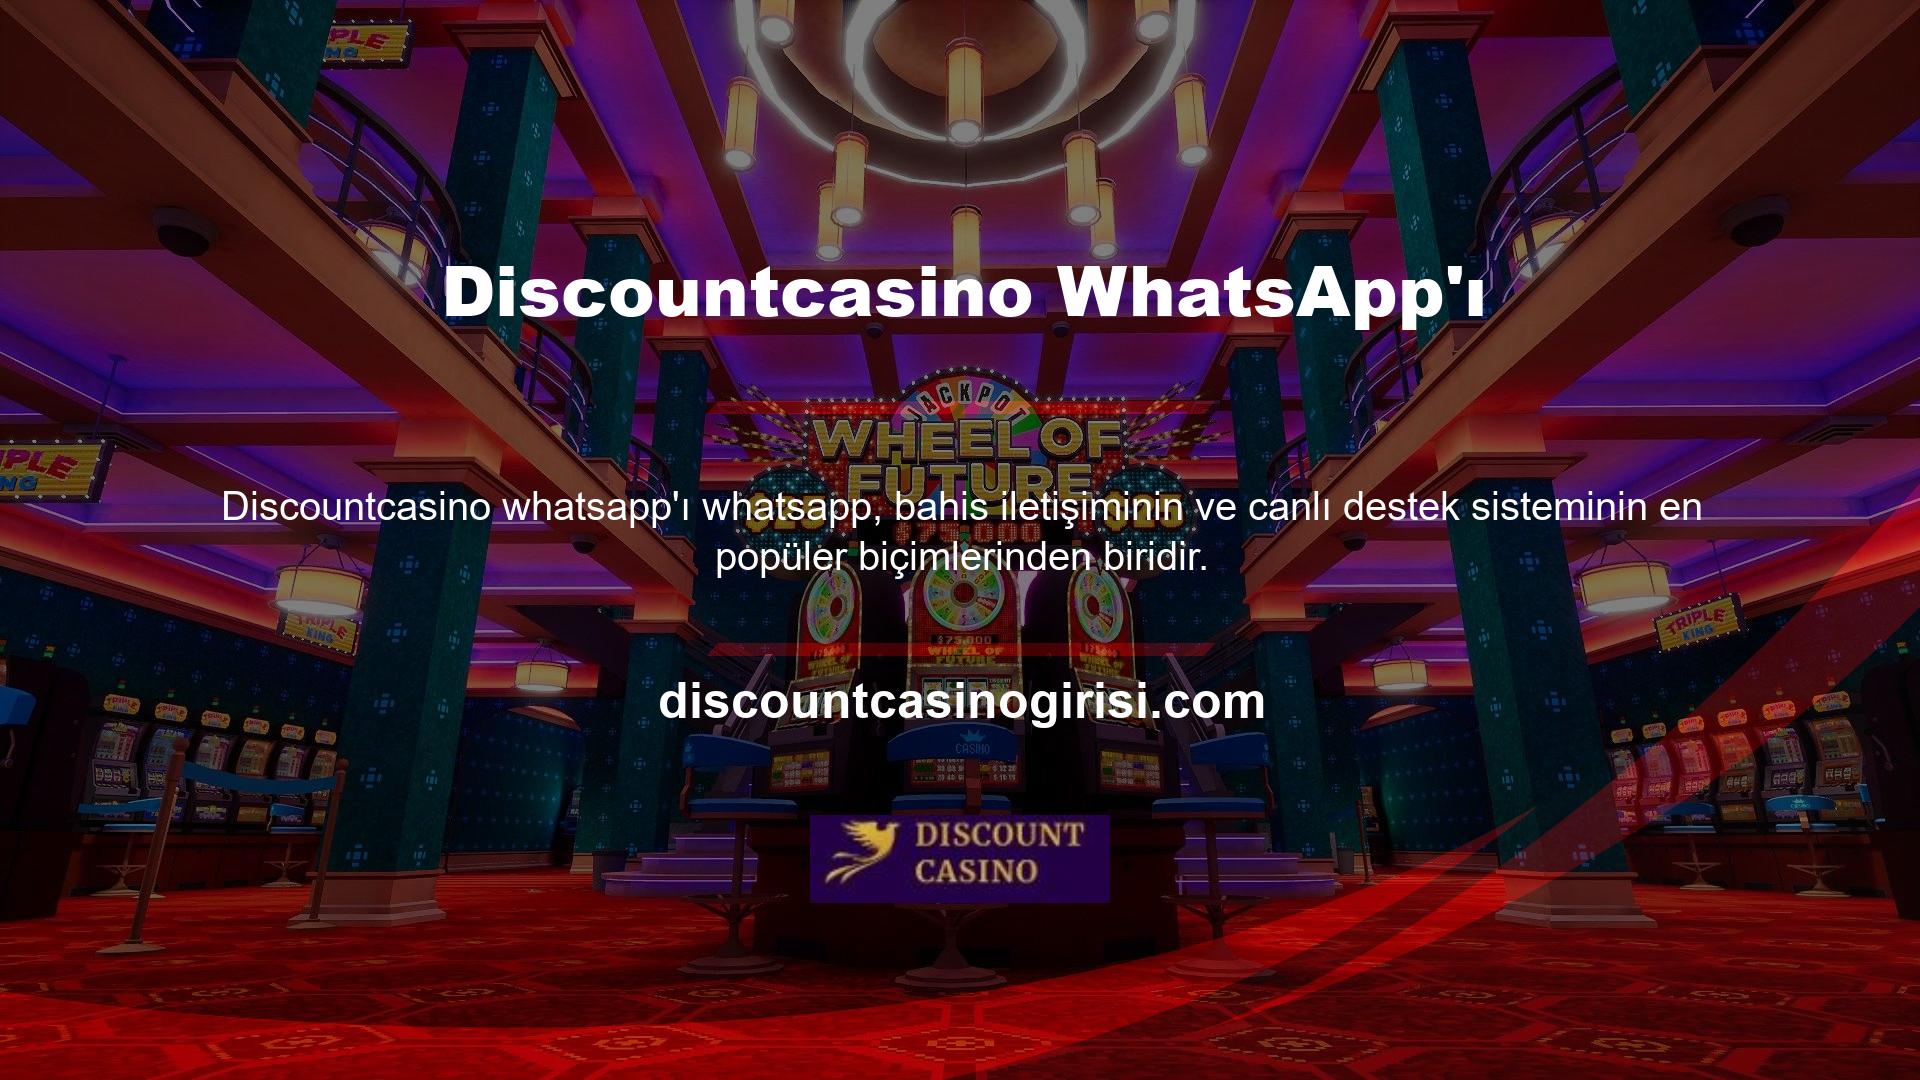 WhatsApp anlık mesajlarıyla ilgili yardıma ihtiyacınız varsa, her zaman casino web sitesindeki WhatsApp temsilcisiyle iletişime geçebilirsiniz